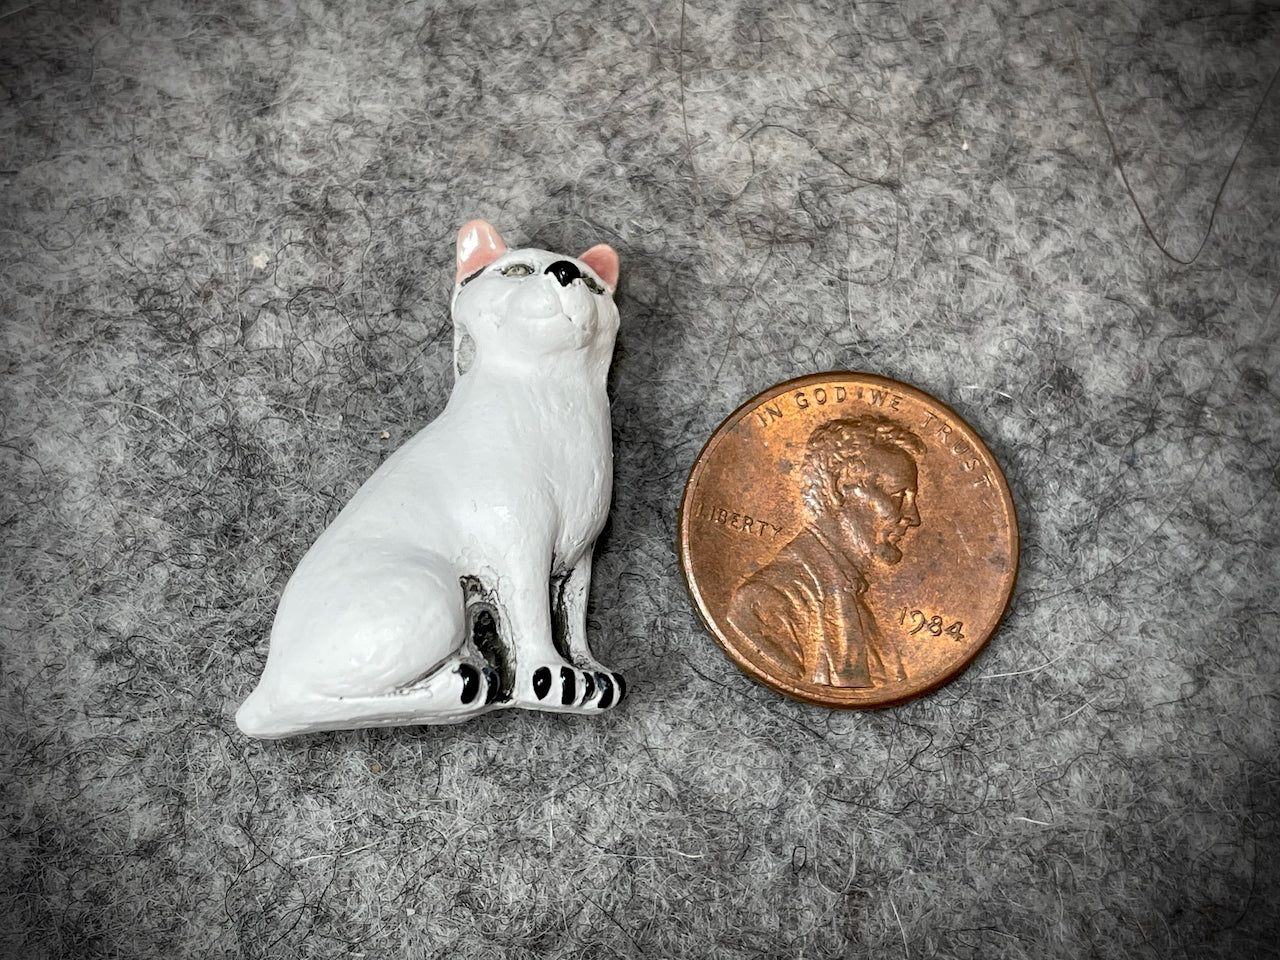 Peruvian Ceramic Bead—Sitting White Cat